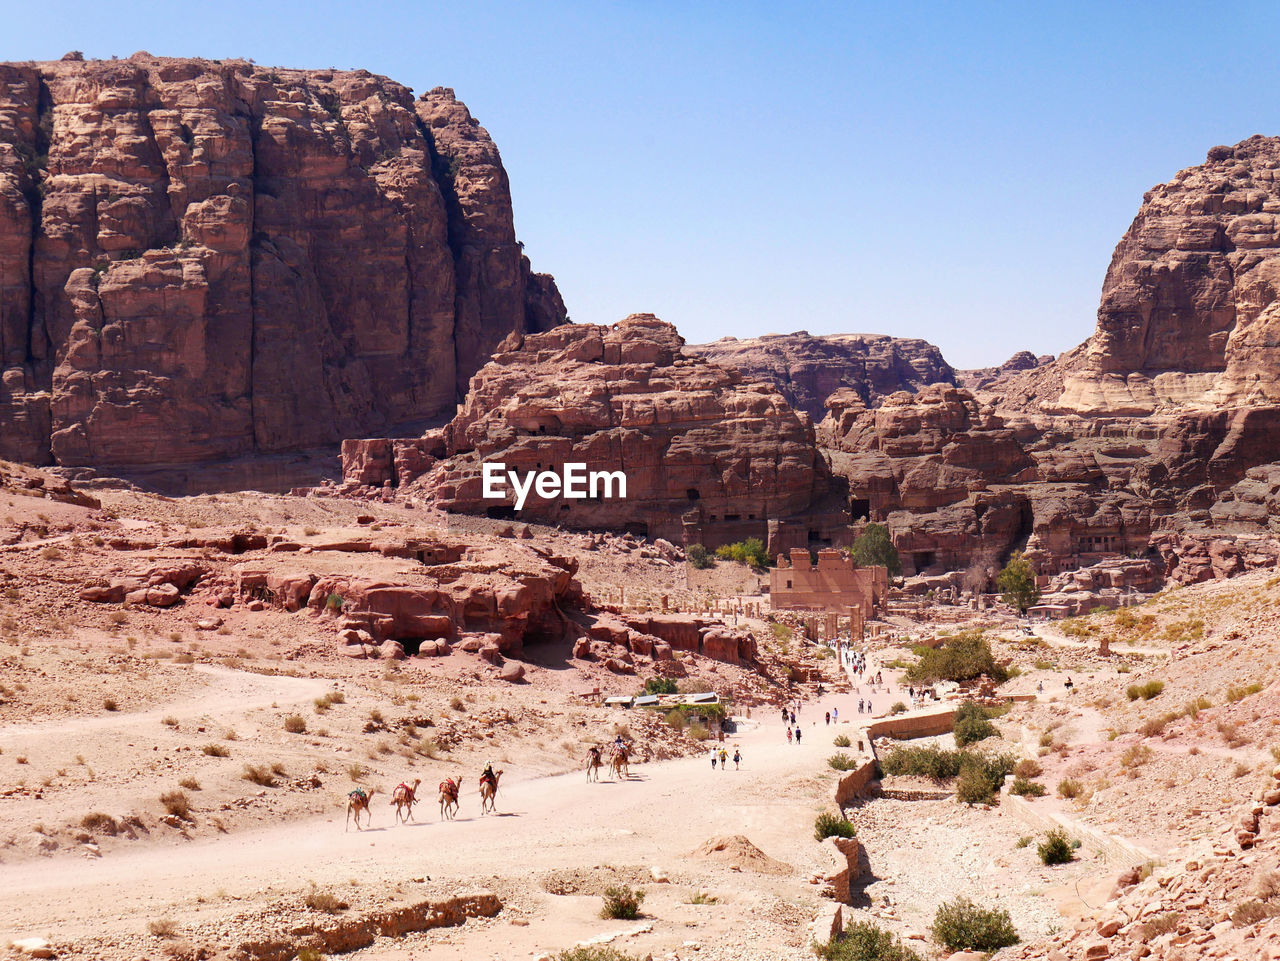 A panoramic view of petra, jordan